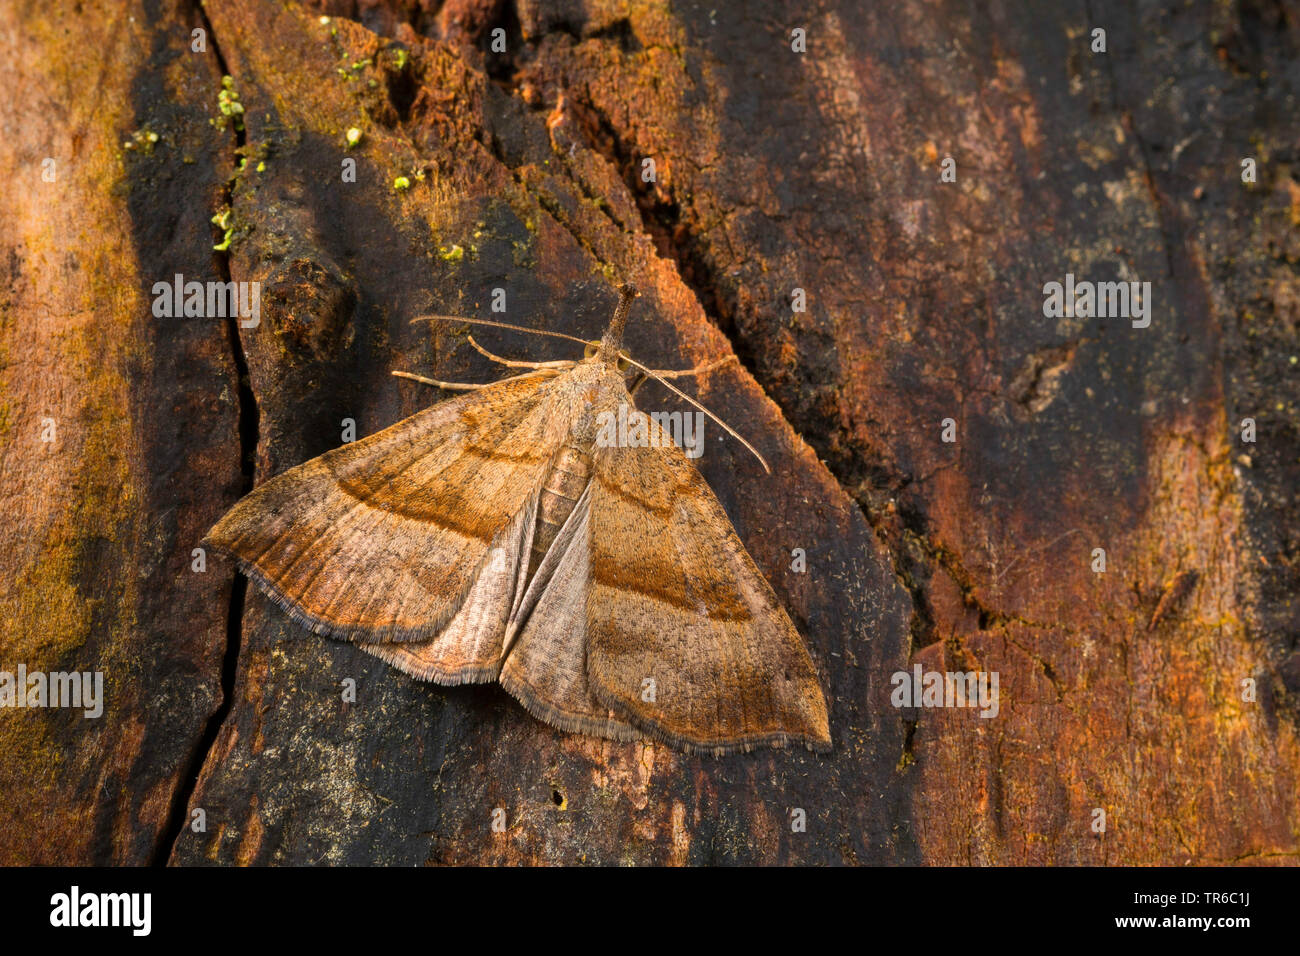 Muso comune (Hypena proboscidalis), in corrispondenza di un tronco di albero, vista da sopra, Germania Foto Stock